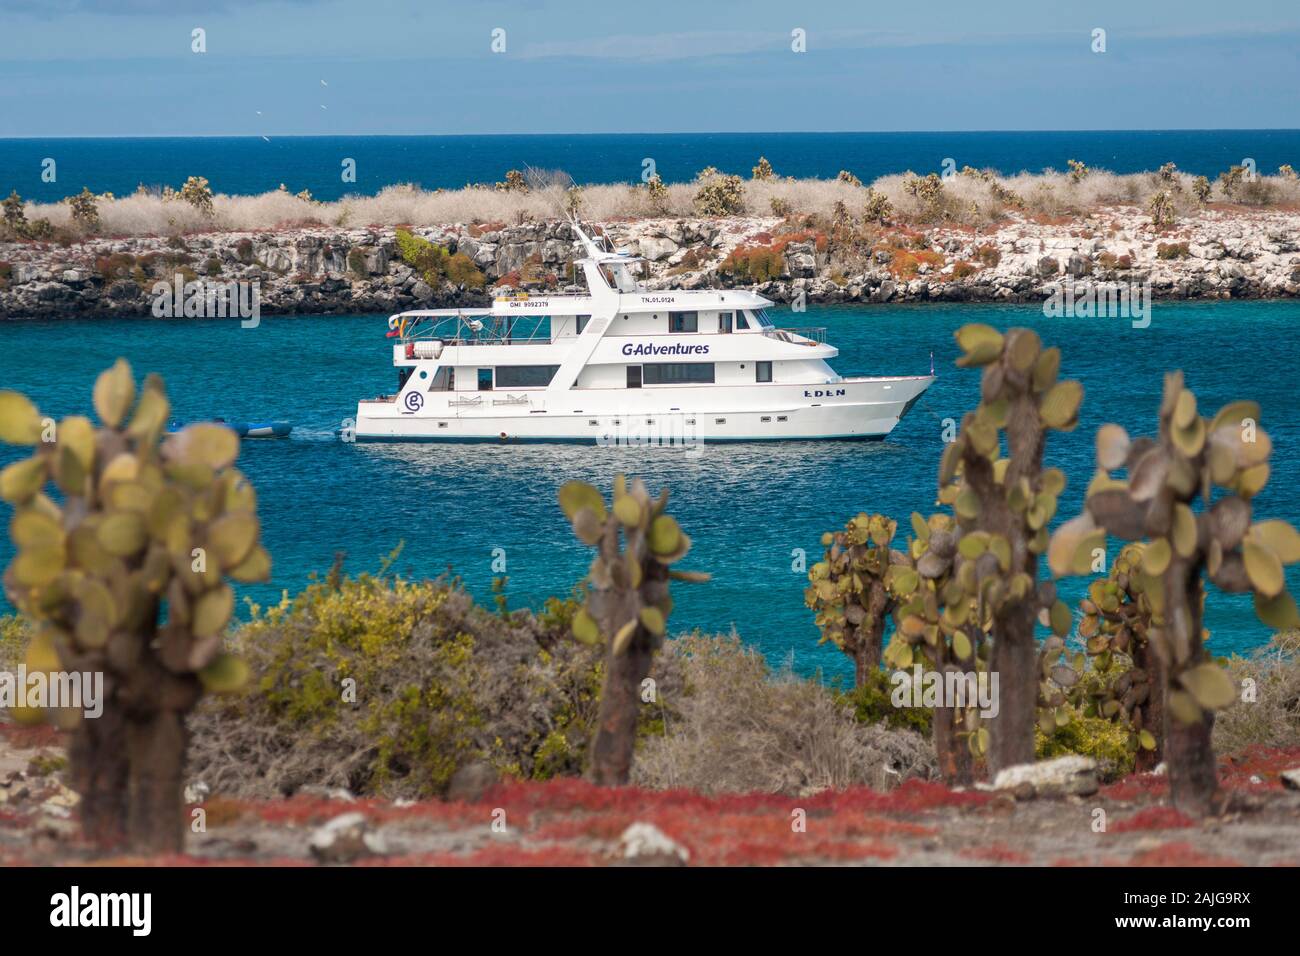 El G-aventuras "Eden" barco anclado frente a la costa de la Isla Plaza Sur, en Galápagos, Ecuador. Foto de stock